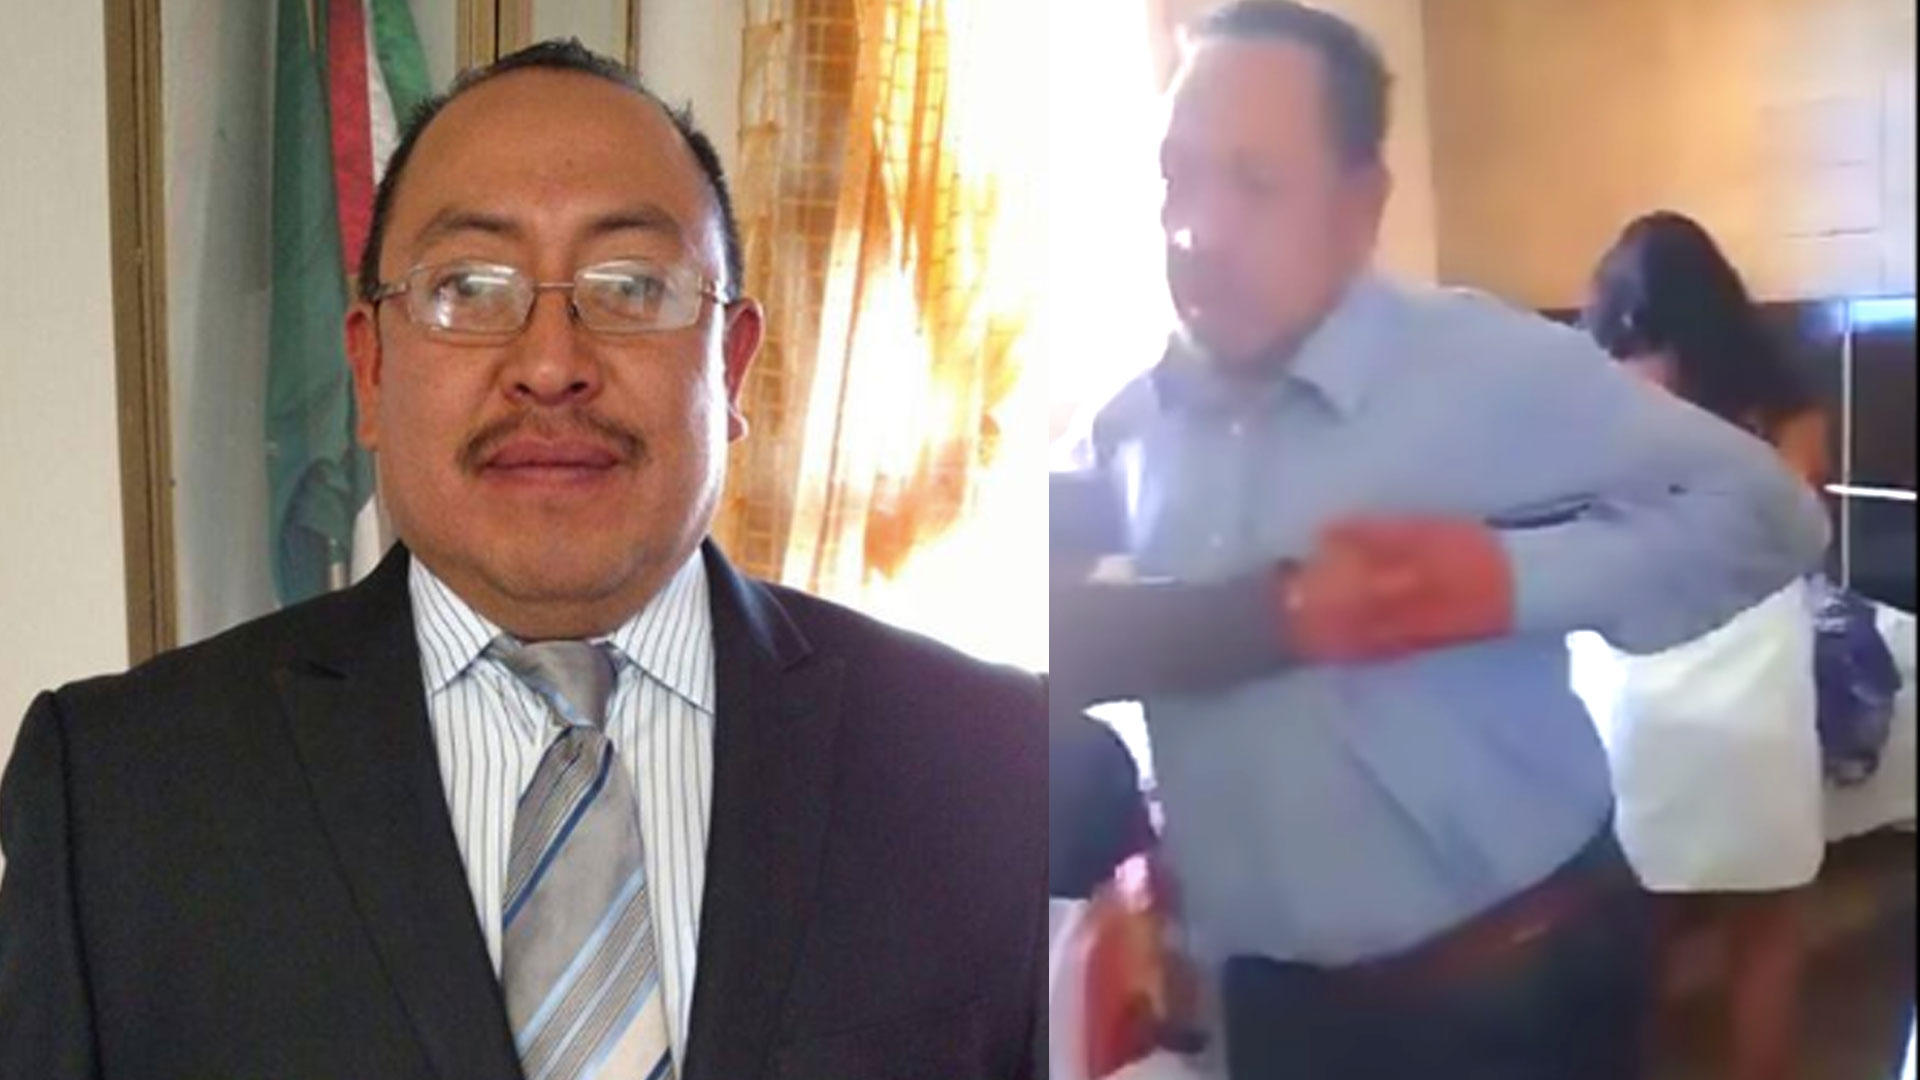 El alcalde no se ha pronunciado sobre el escándalo (Foto: Facebook cruz.juarez / YouTube)